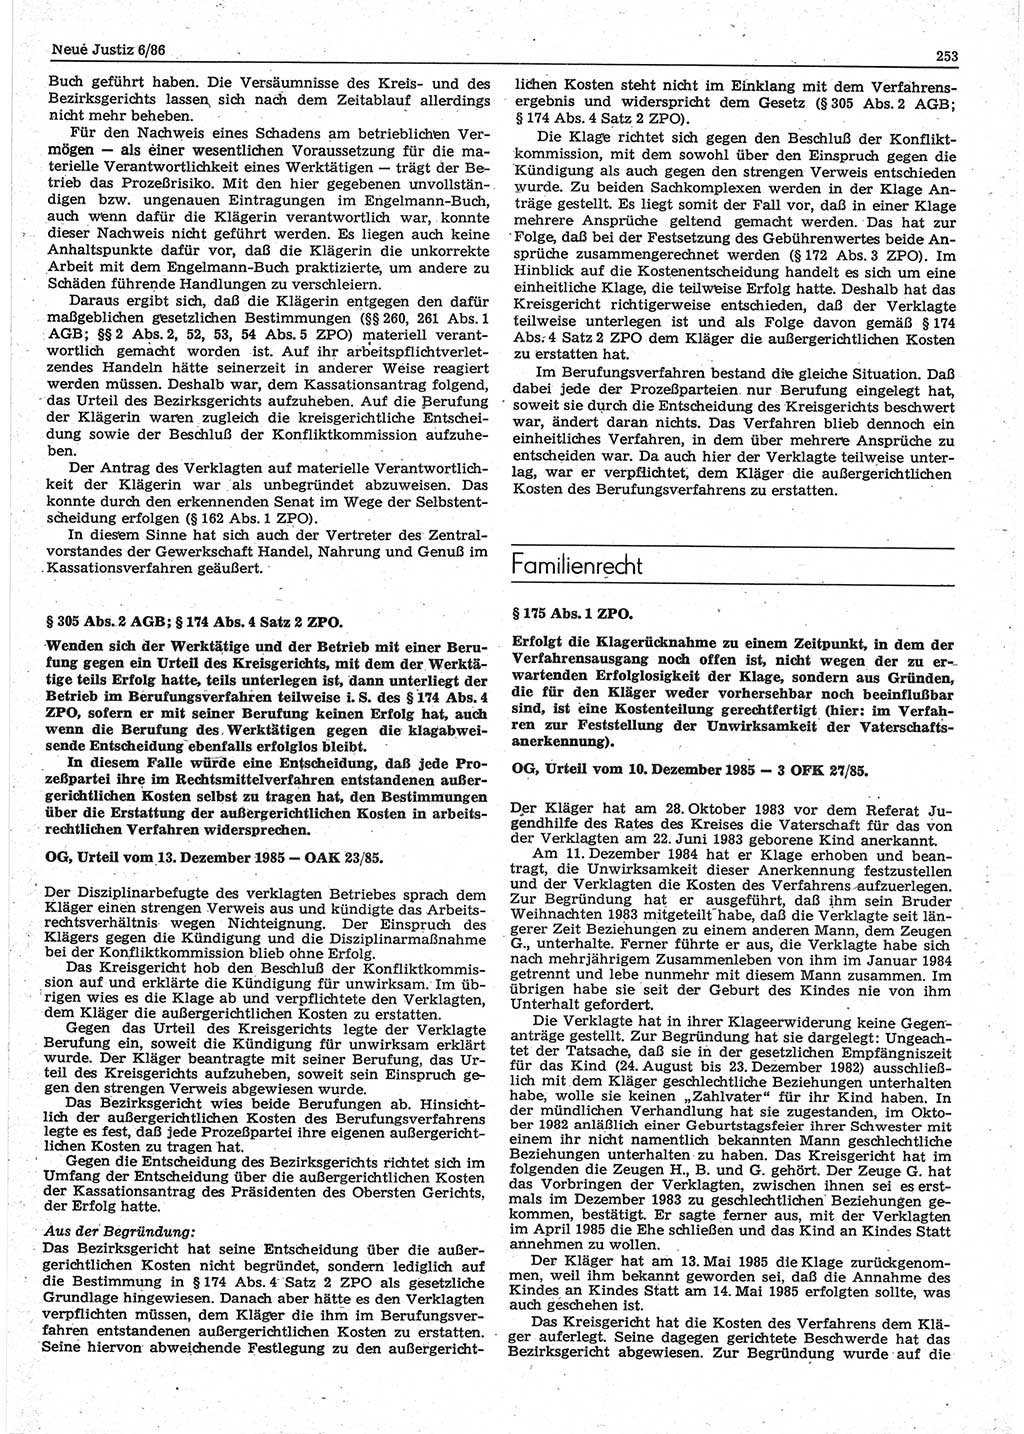 Neue Justiz (NJ), Zeitschrift für sozialistisches Recht und Gesetzlichkeit [Deutsche Demokratische Republik (DDR)], 40. Jahrgang 1986, Seite 253 (NJ DDR 1986, S. 253)